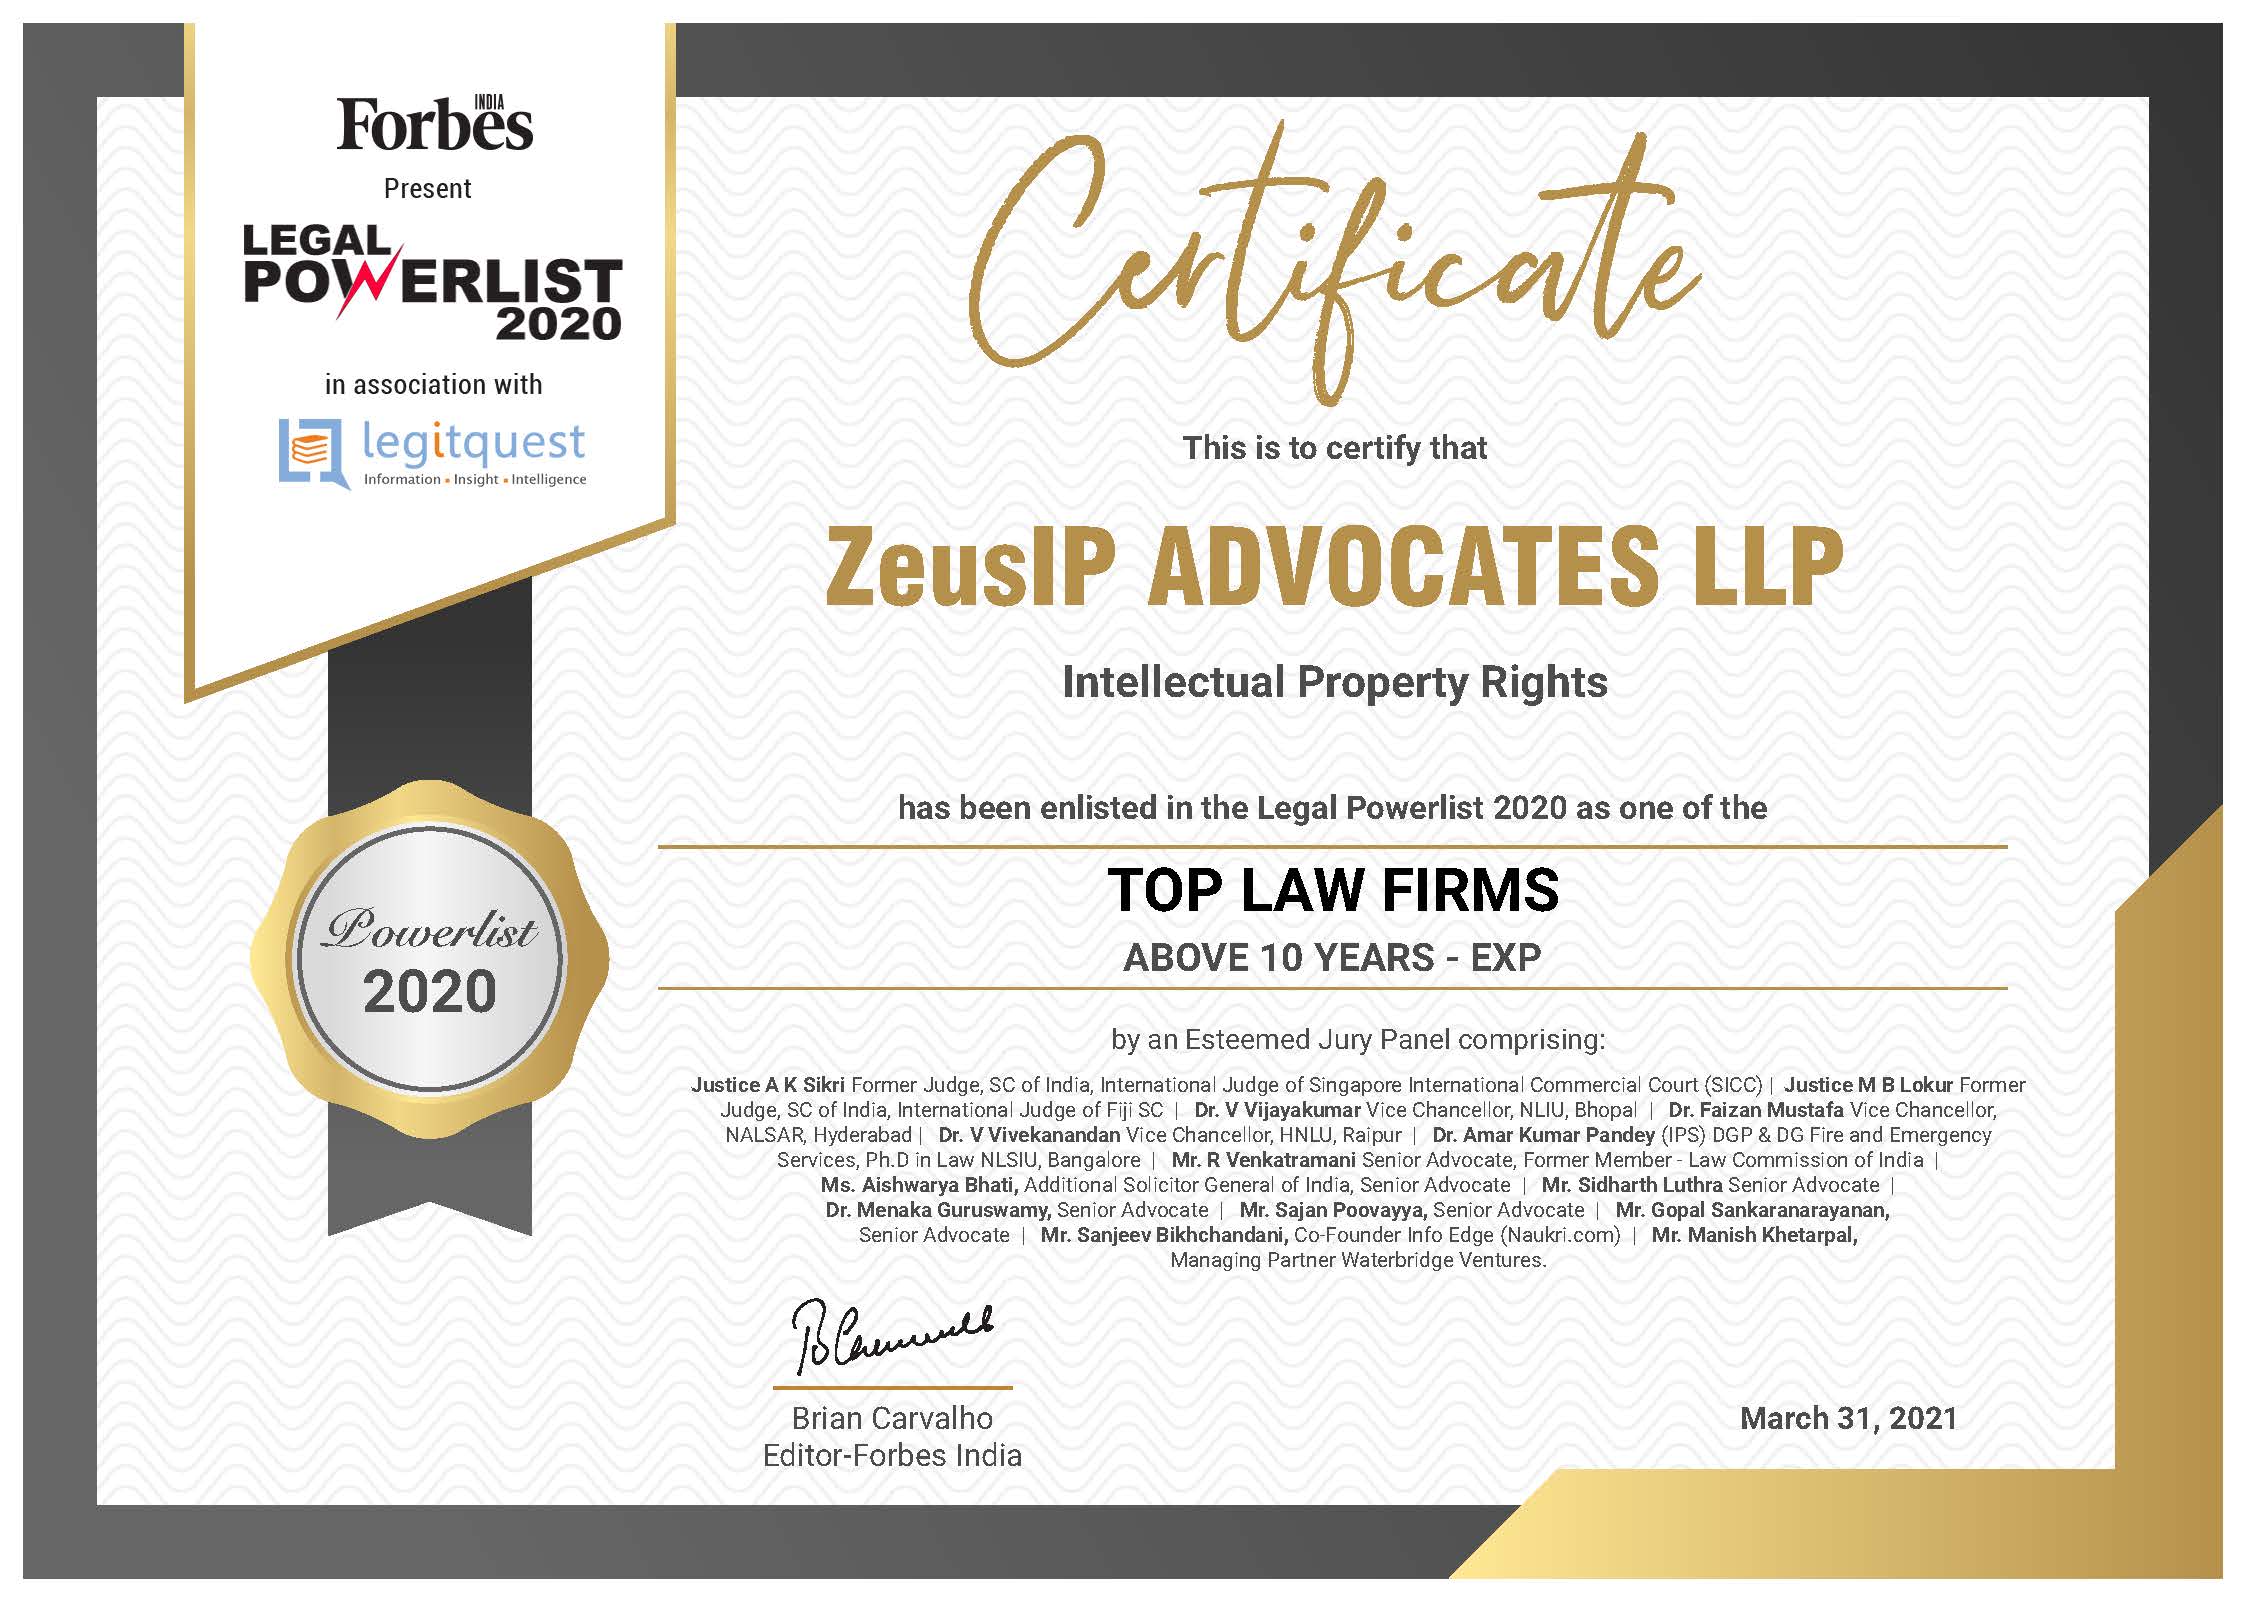 Top Law Firm 2020 Winner